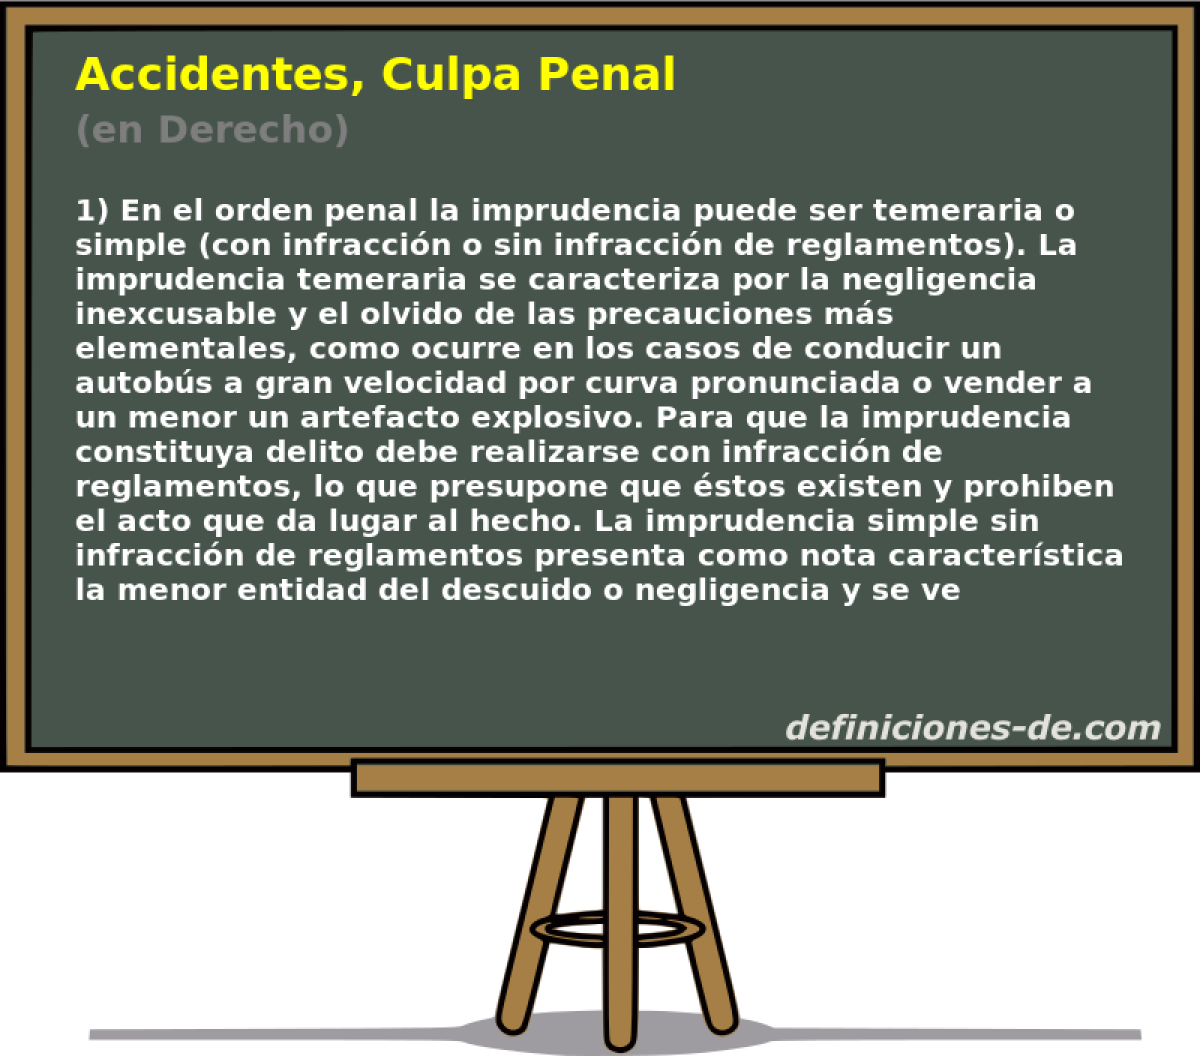 Accidentes, Culpa Penal (en Derecho)